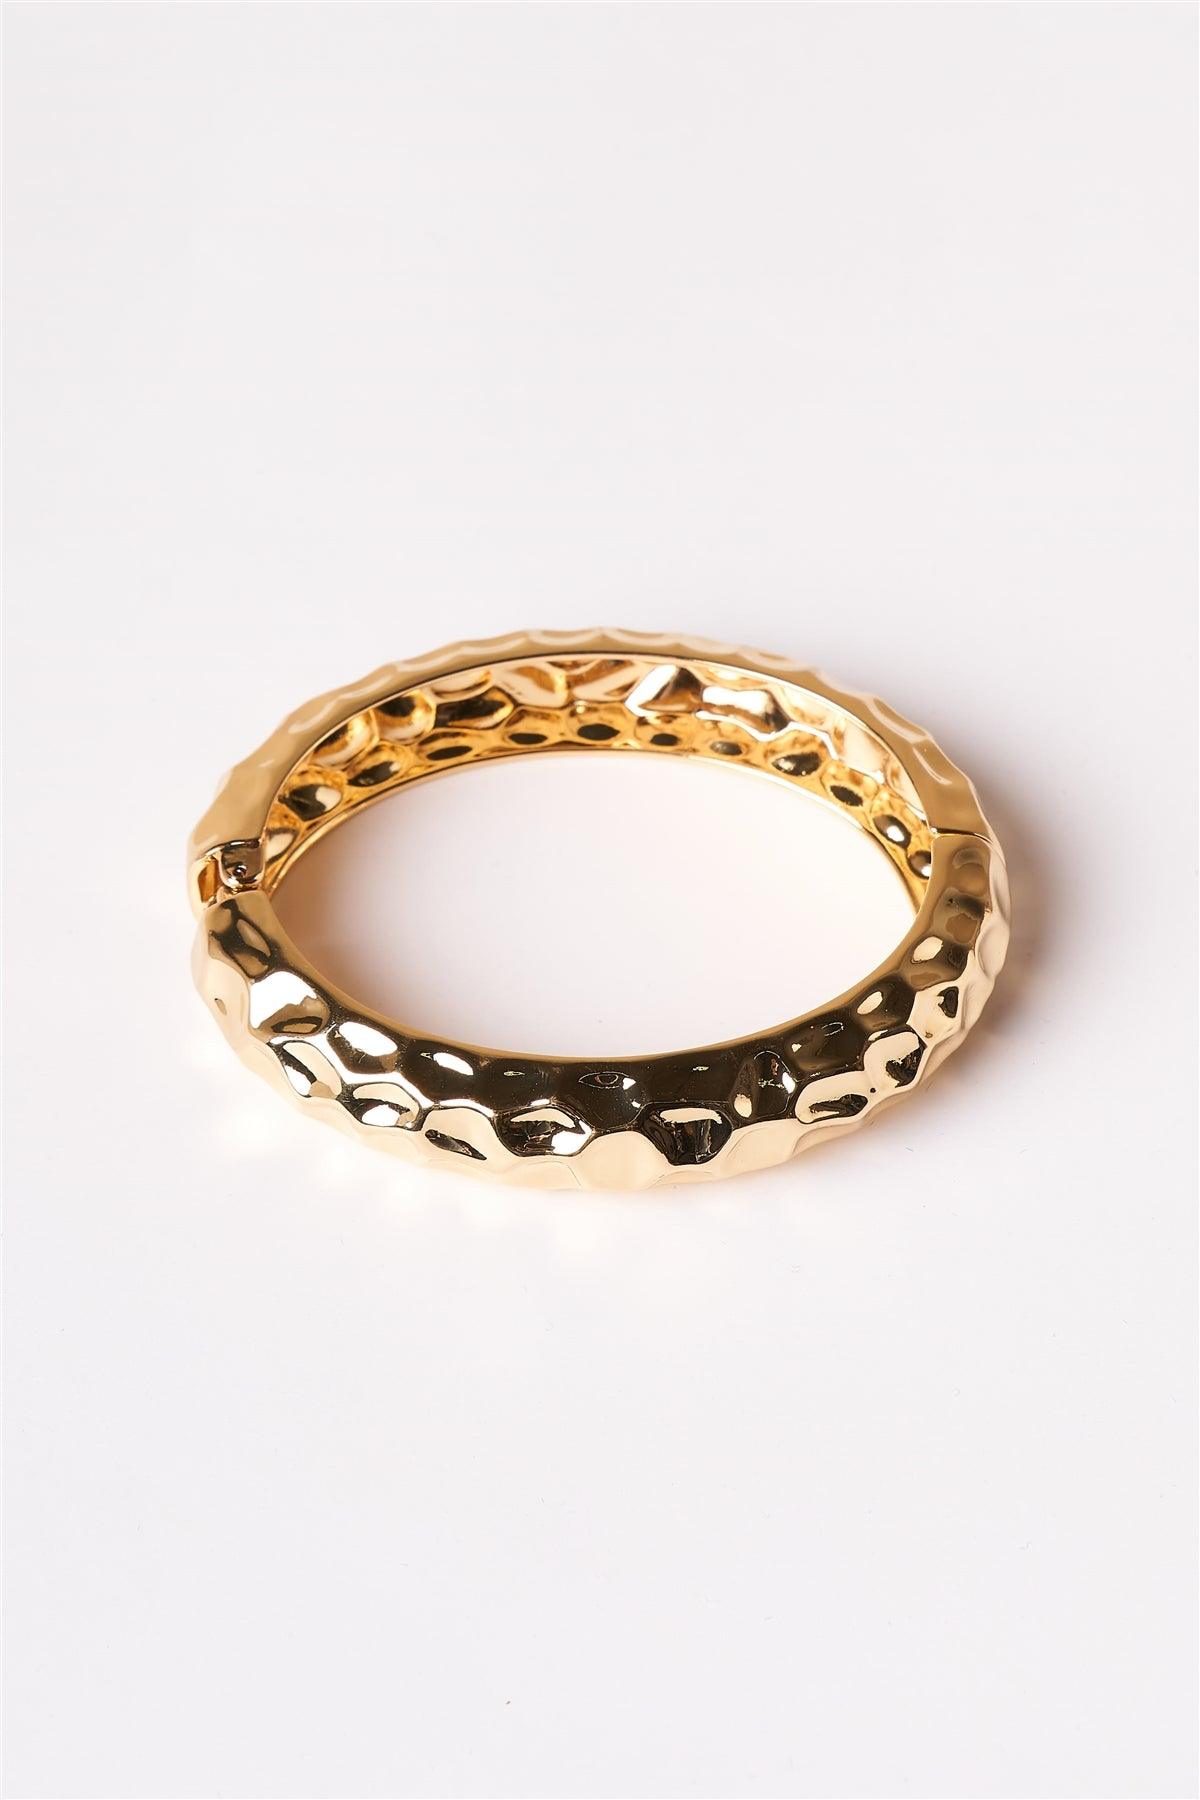 Gold Warped Metallic Bangle Bracelet /1 Piece